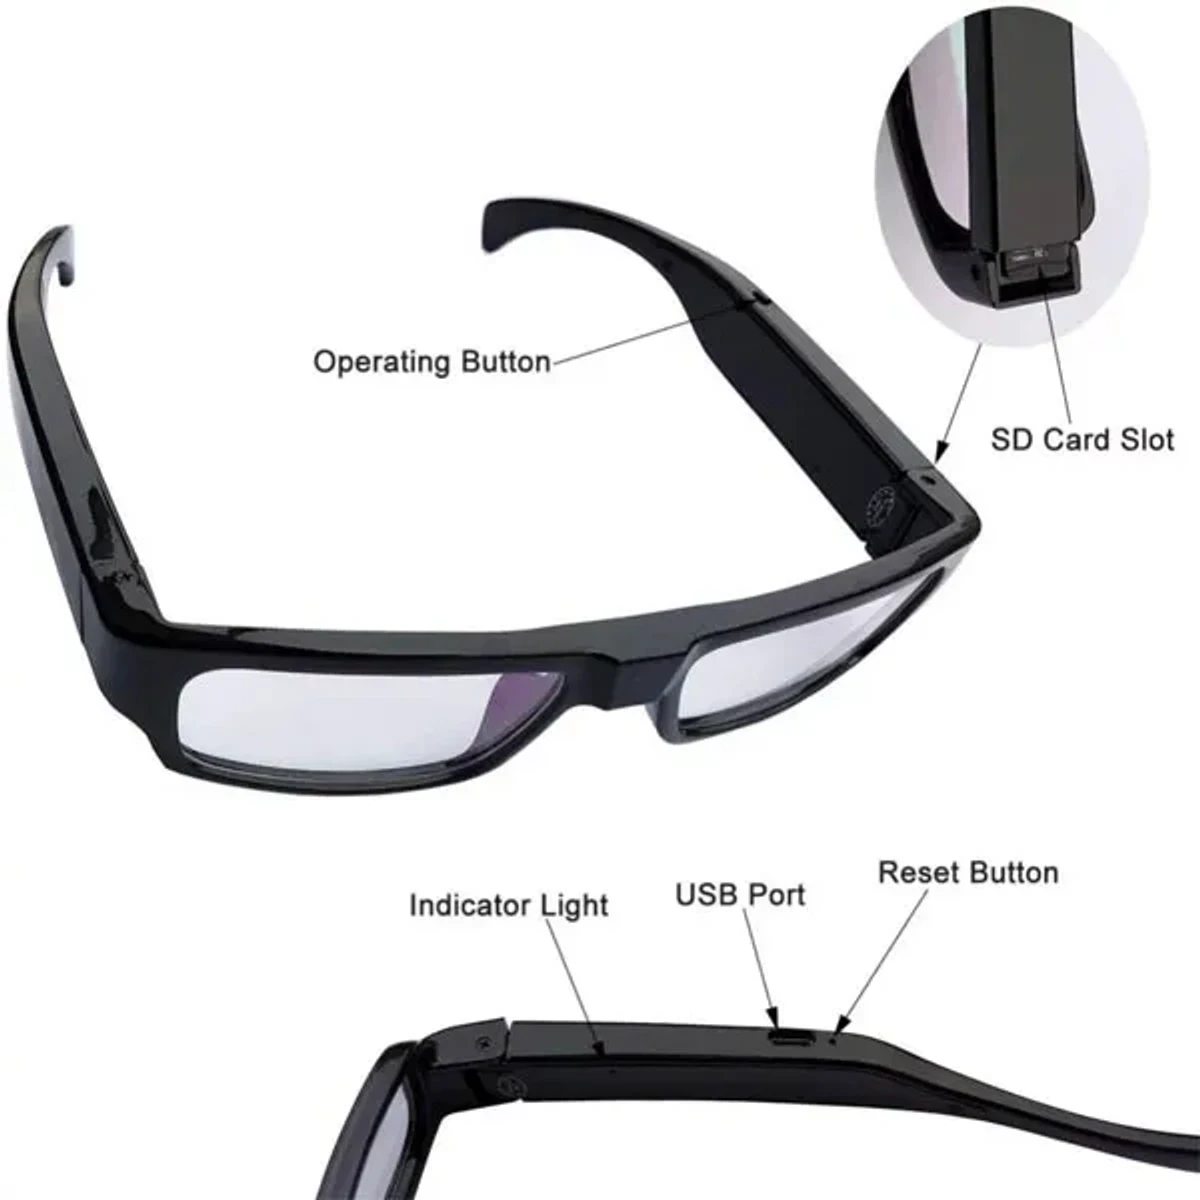 1080P HD Camera Glasses